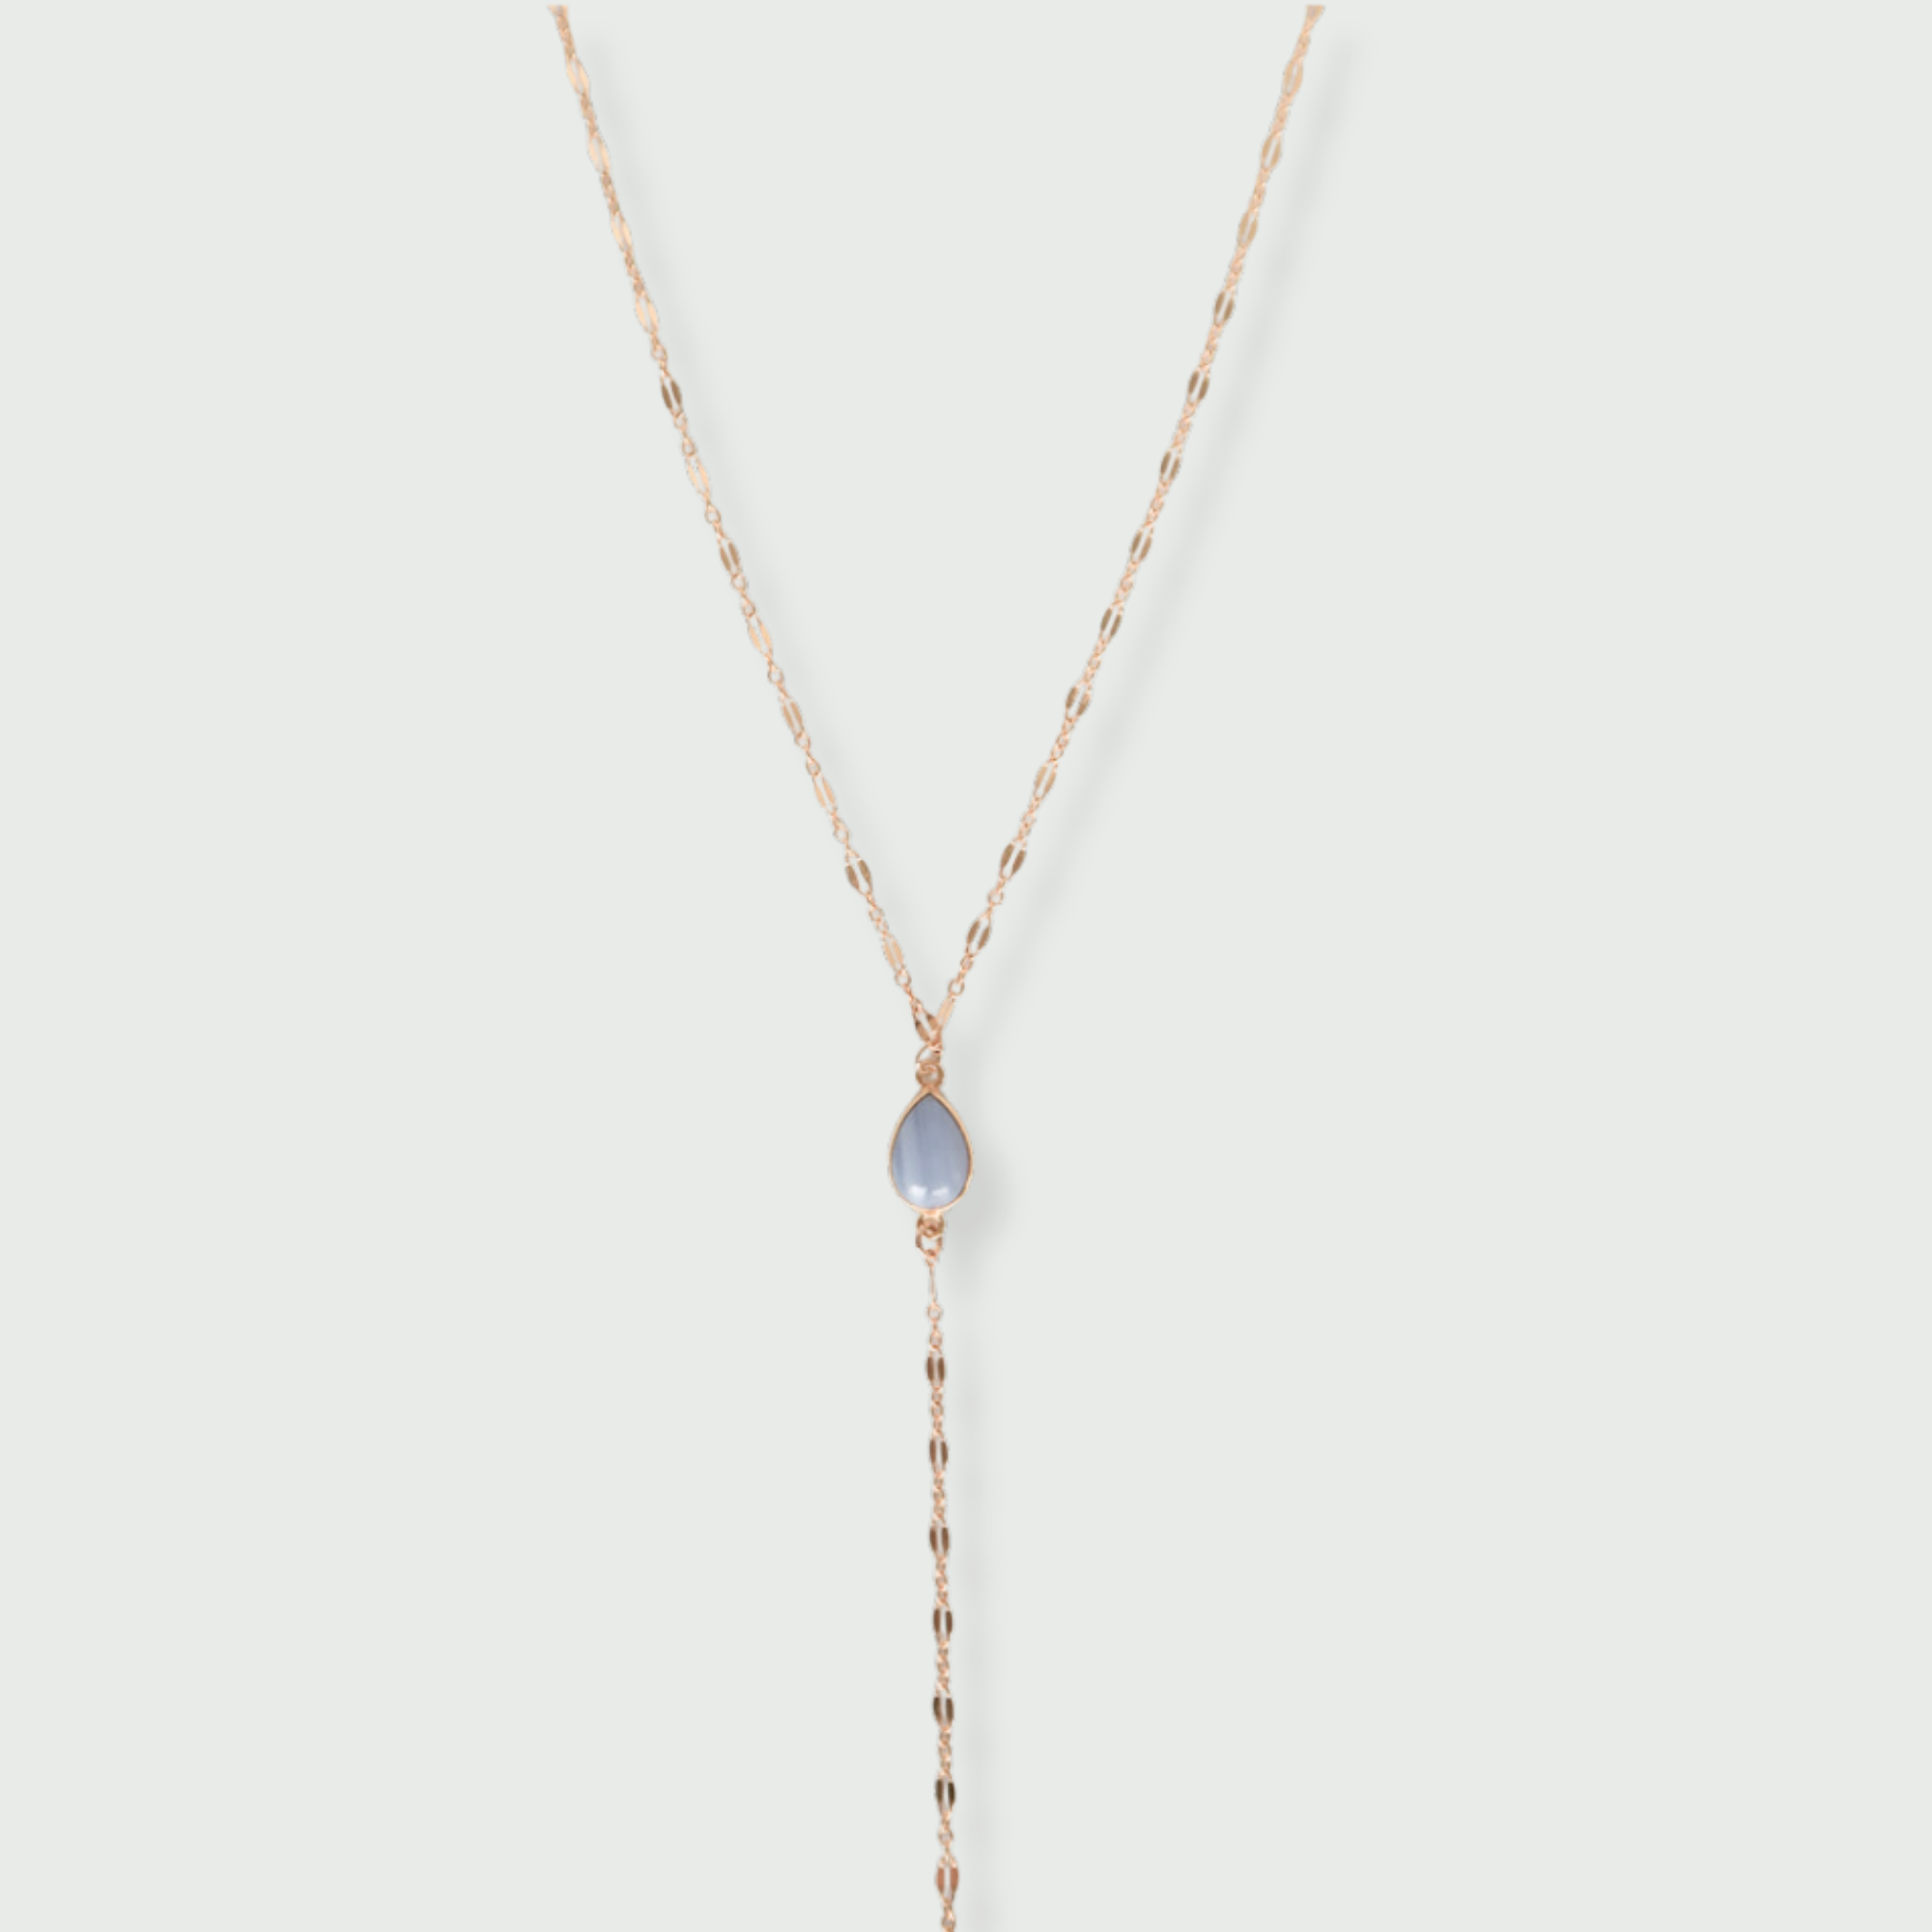 Blue Lace Agate Lariat Necklace